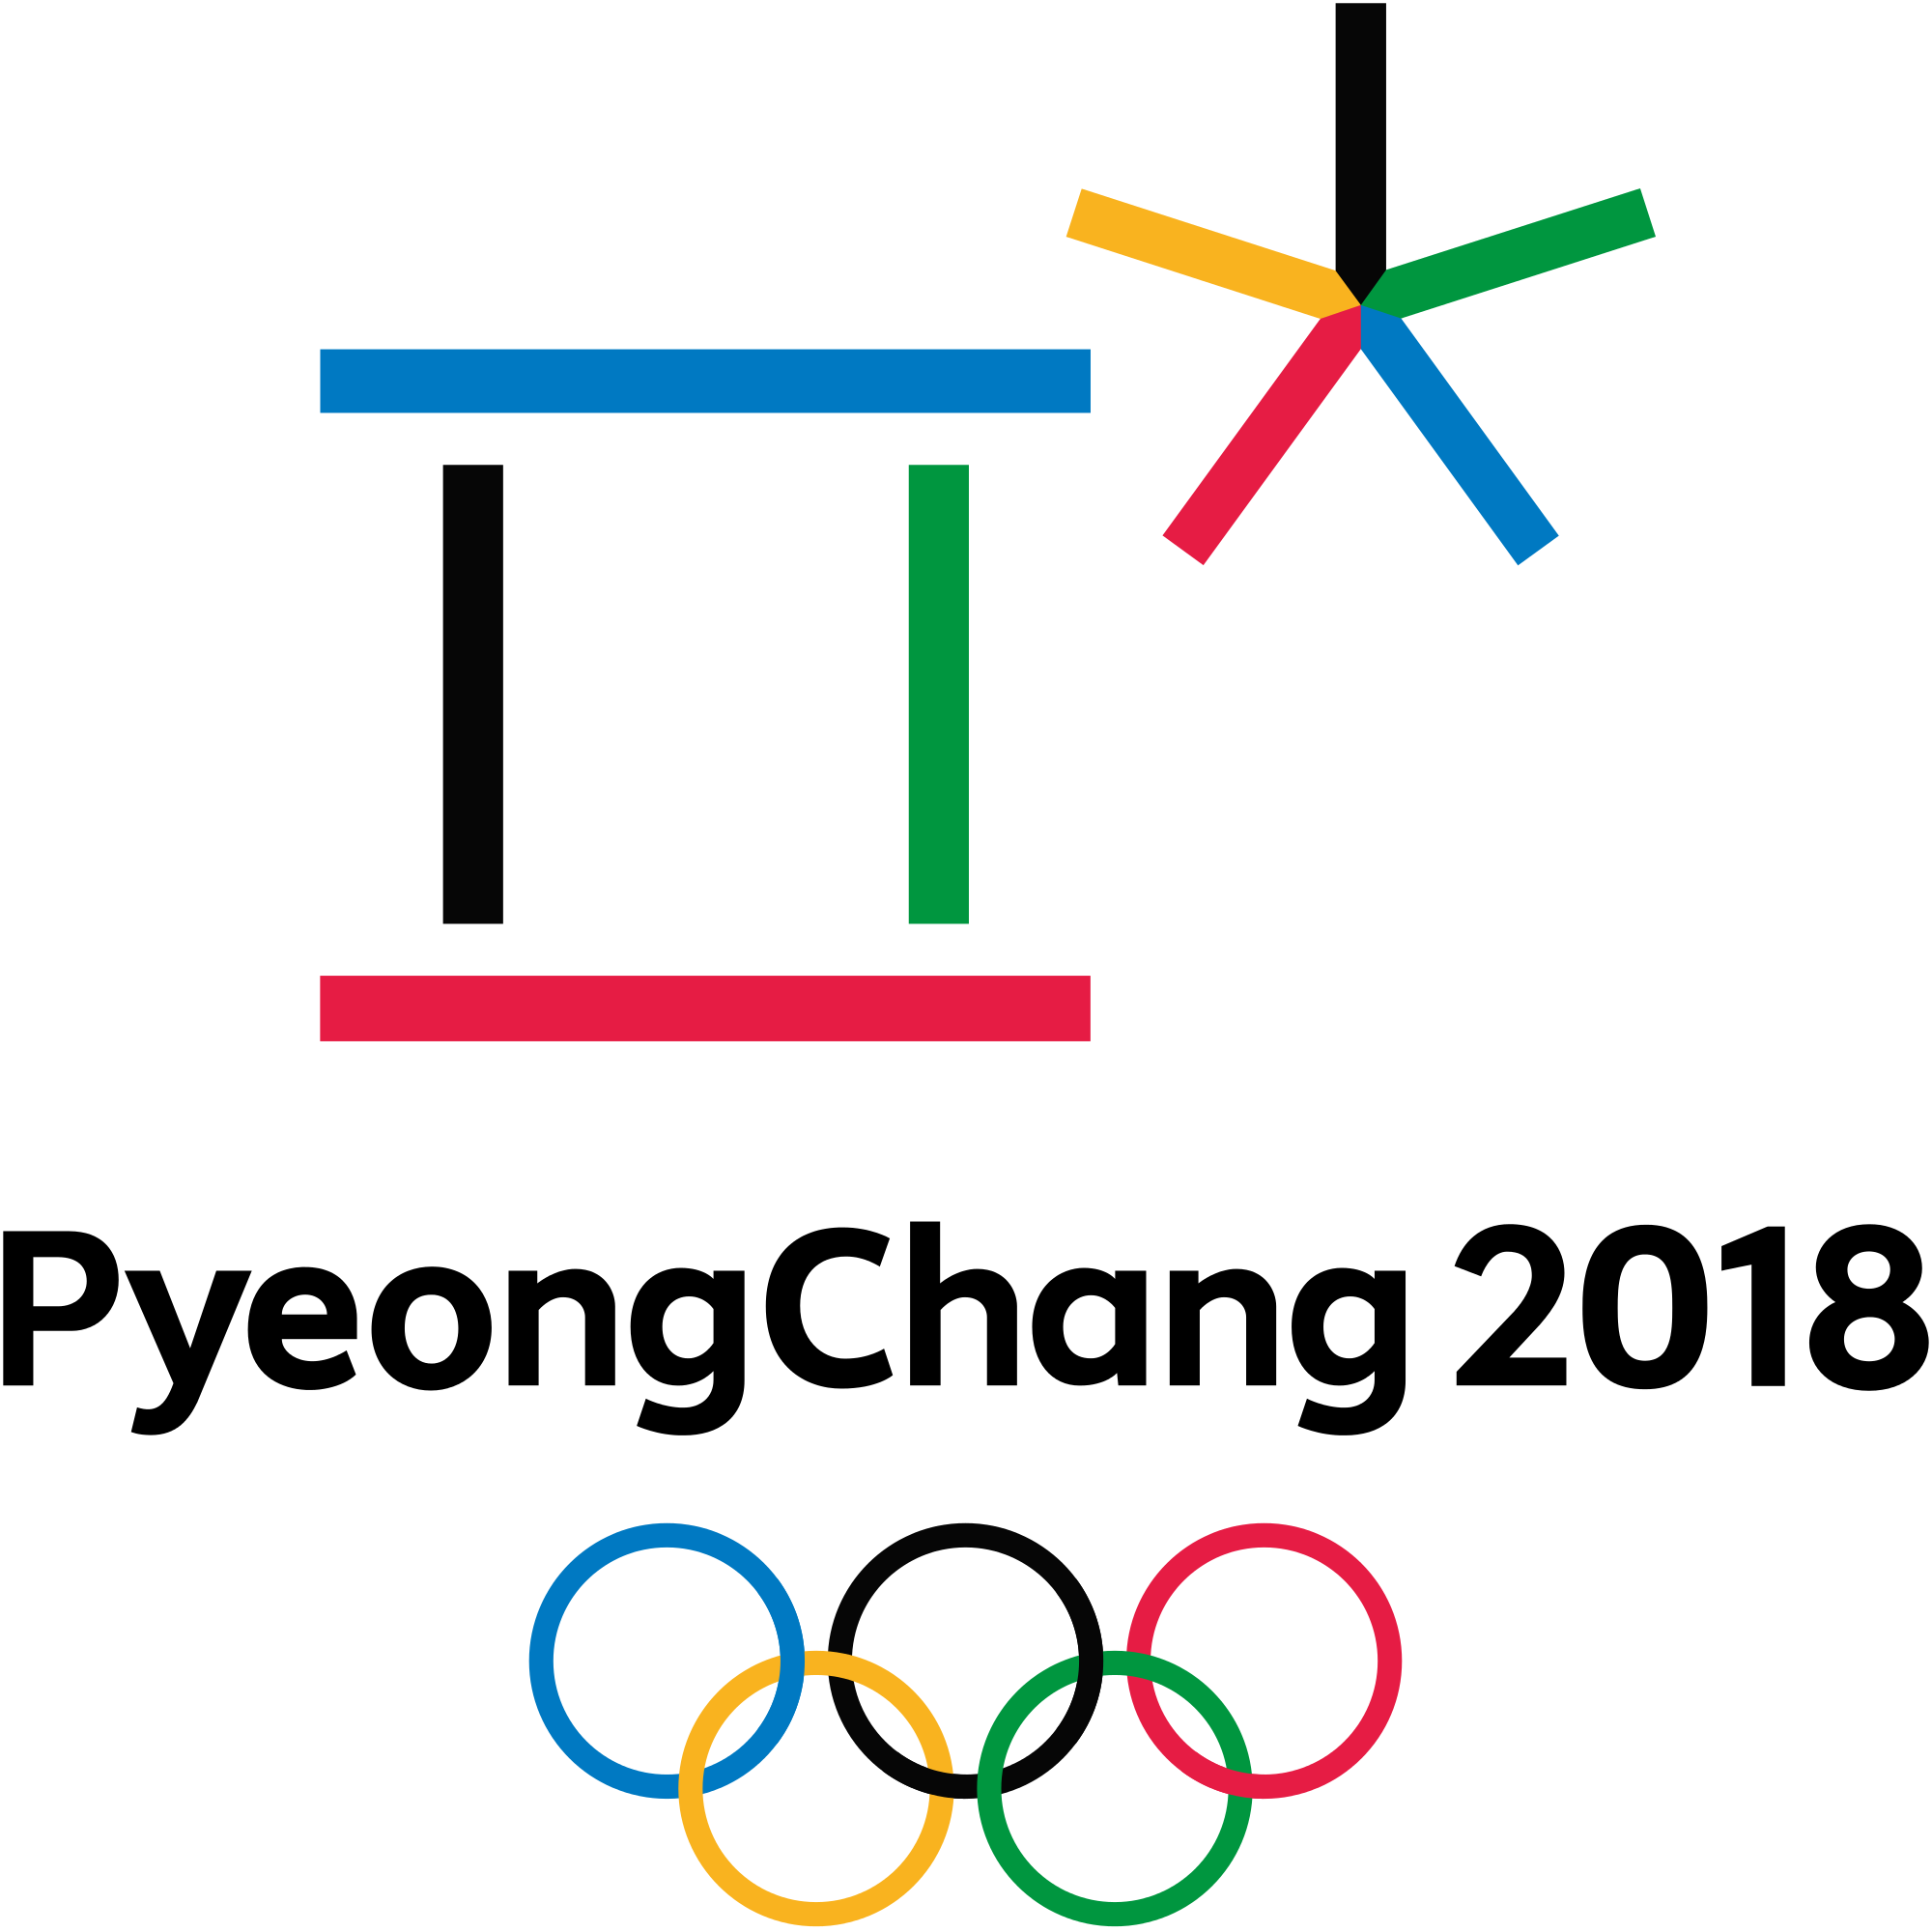 PeyeongChang 2018